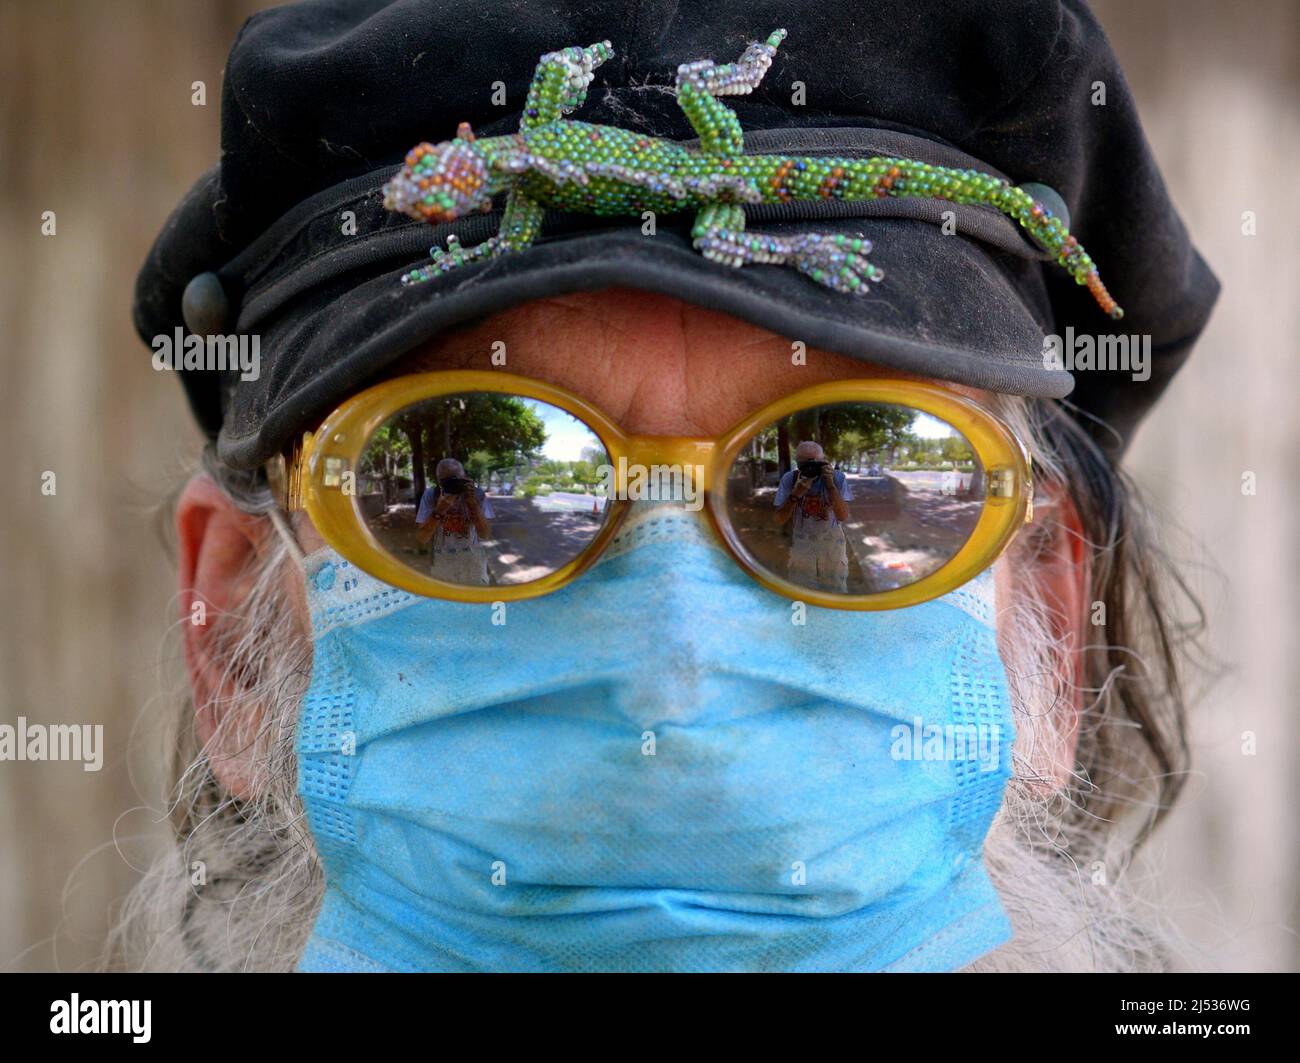 Das Porträt eines älteren kaukasischen Mannes mit verspiegelter Sonnenbrille und hellblauer chirurgischer Gesichtsmaske trägt eine Spitzenkappe mit einem Reptilienabzeichen (Leguan). Stockfoto